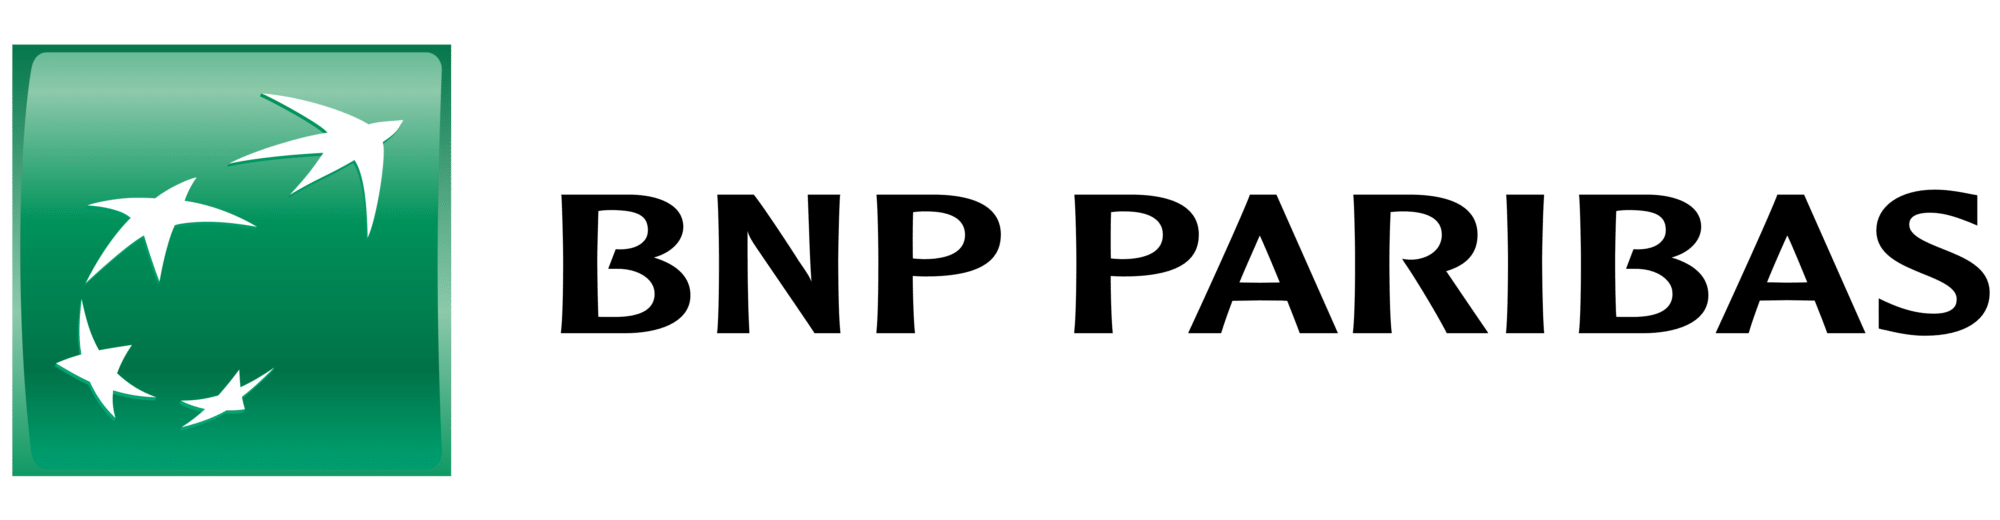 BNP Paribas logo logotype emblem